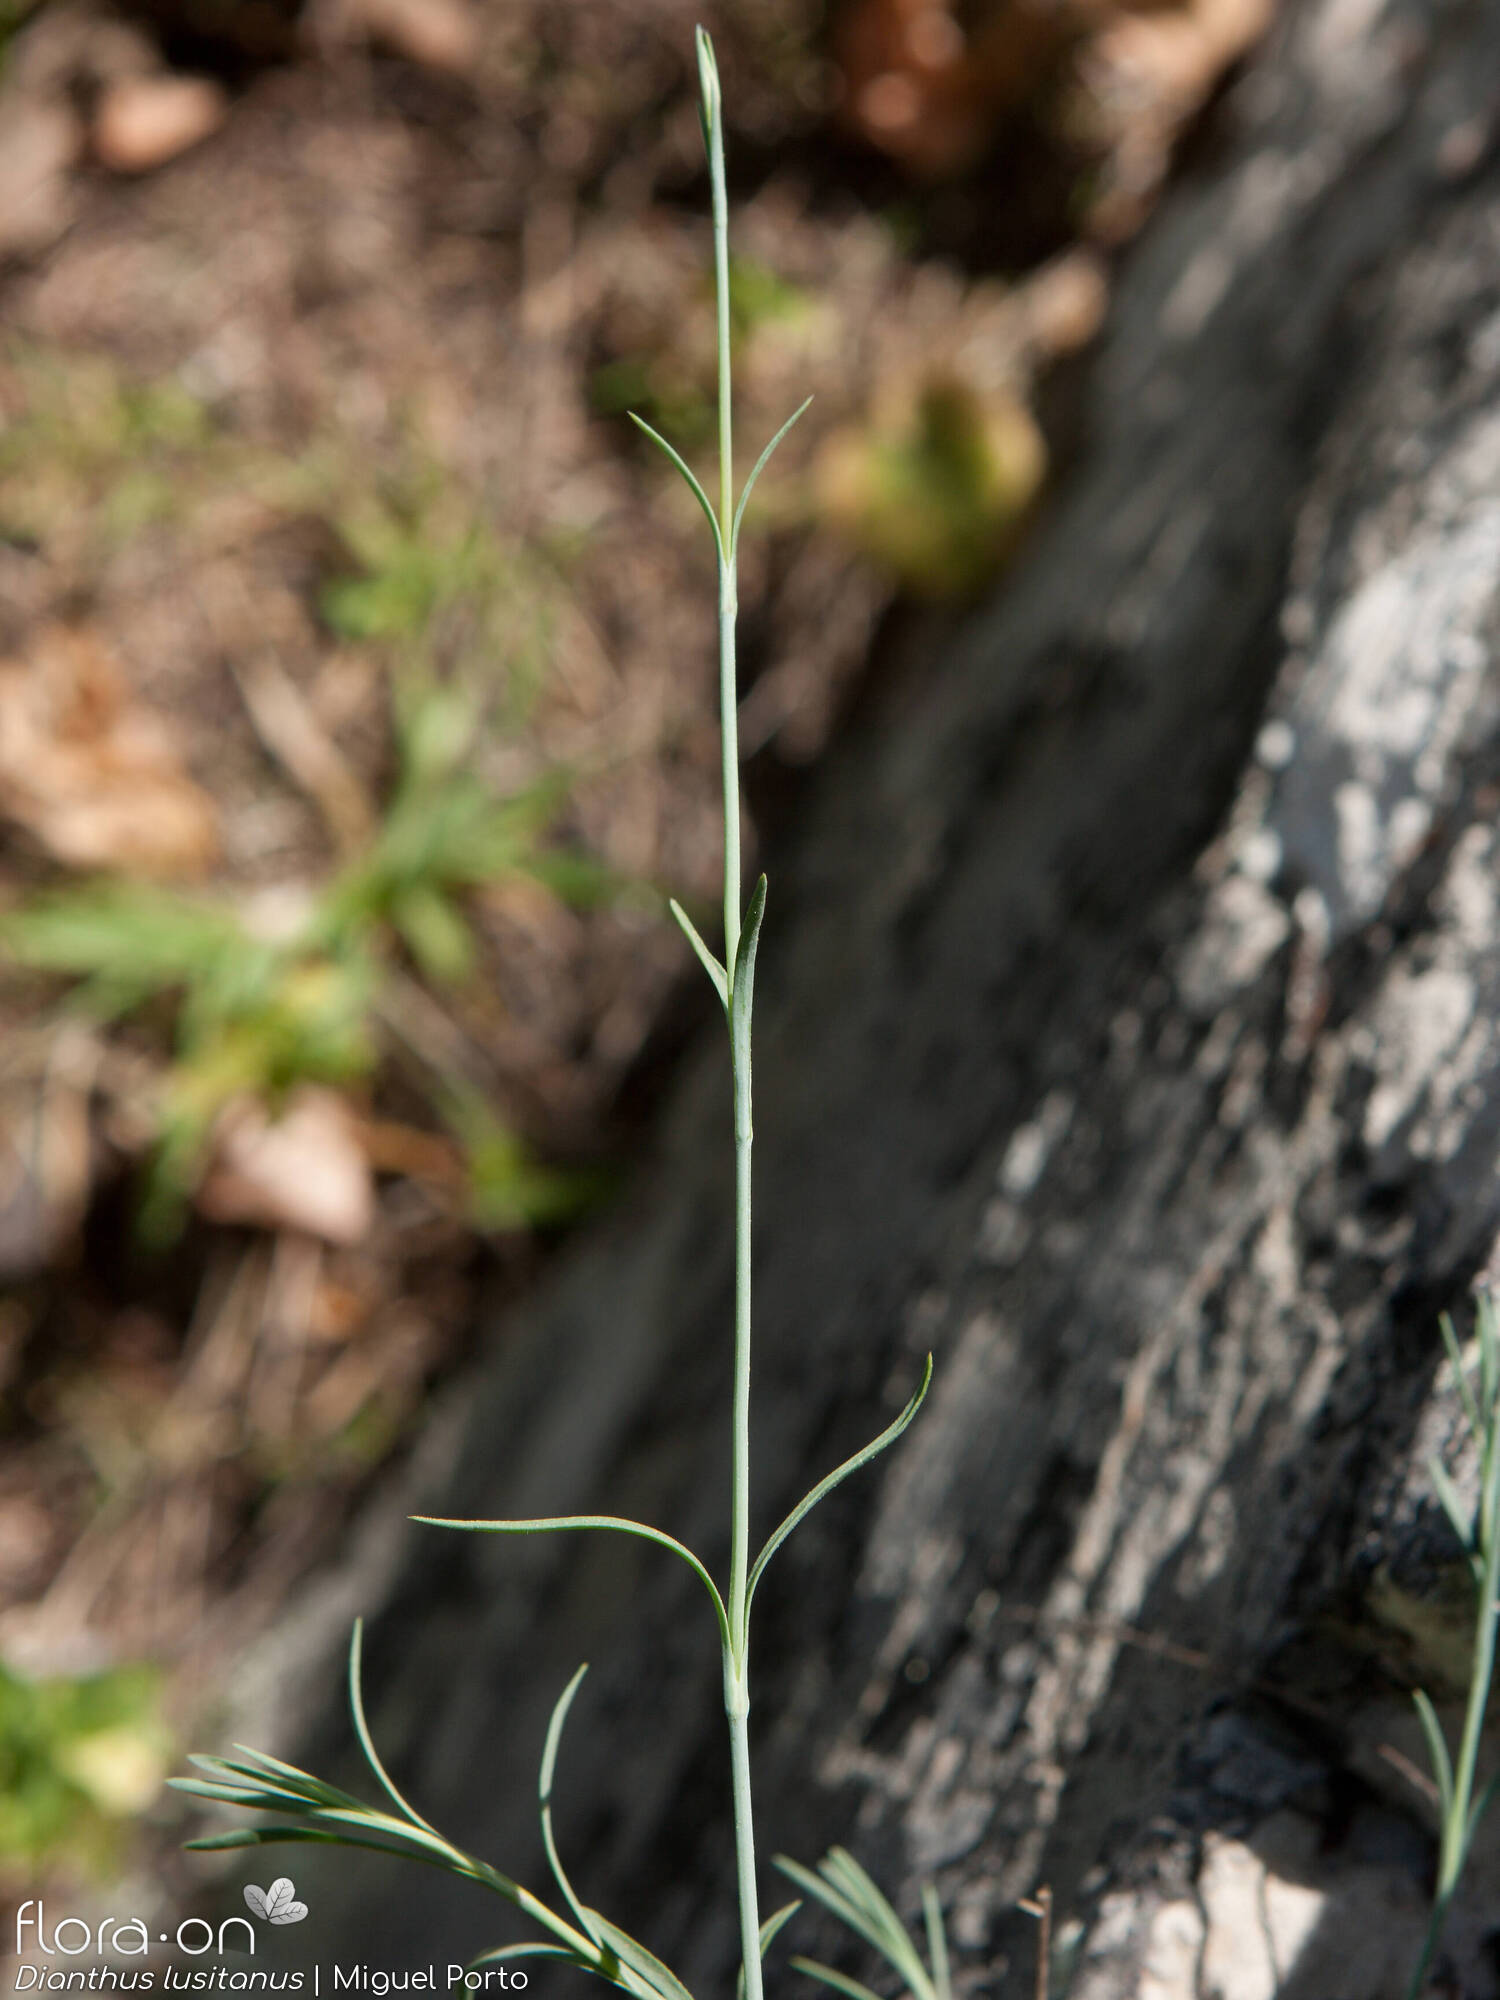 Dianthus lusitanus - Caule | Miguel Porto; CC BY-NC 4.0